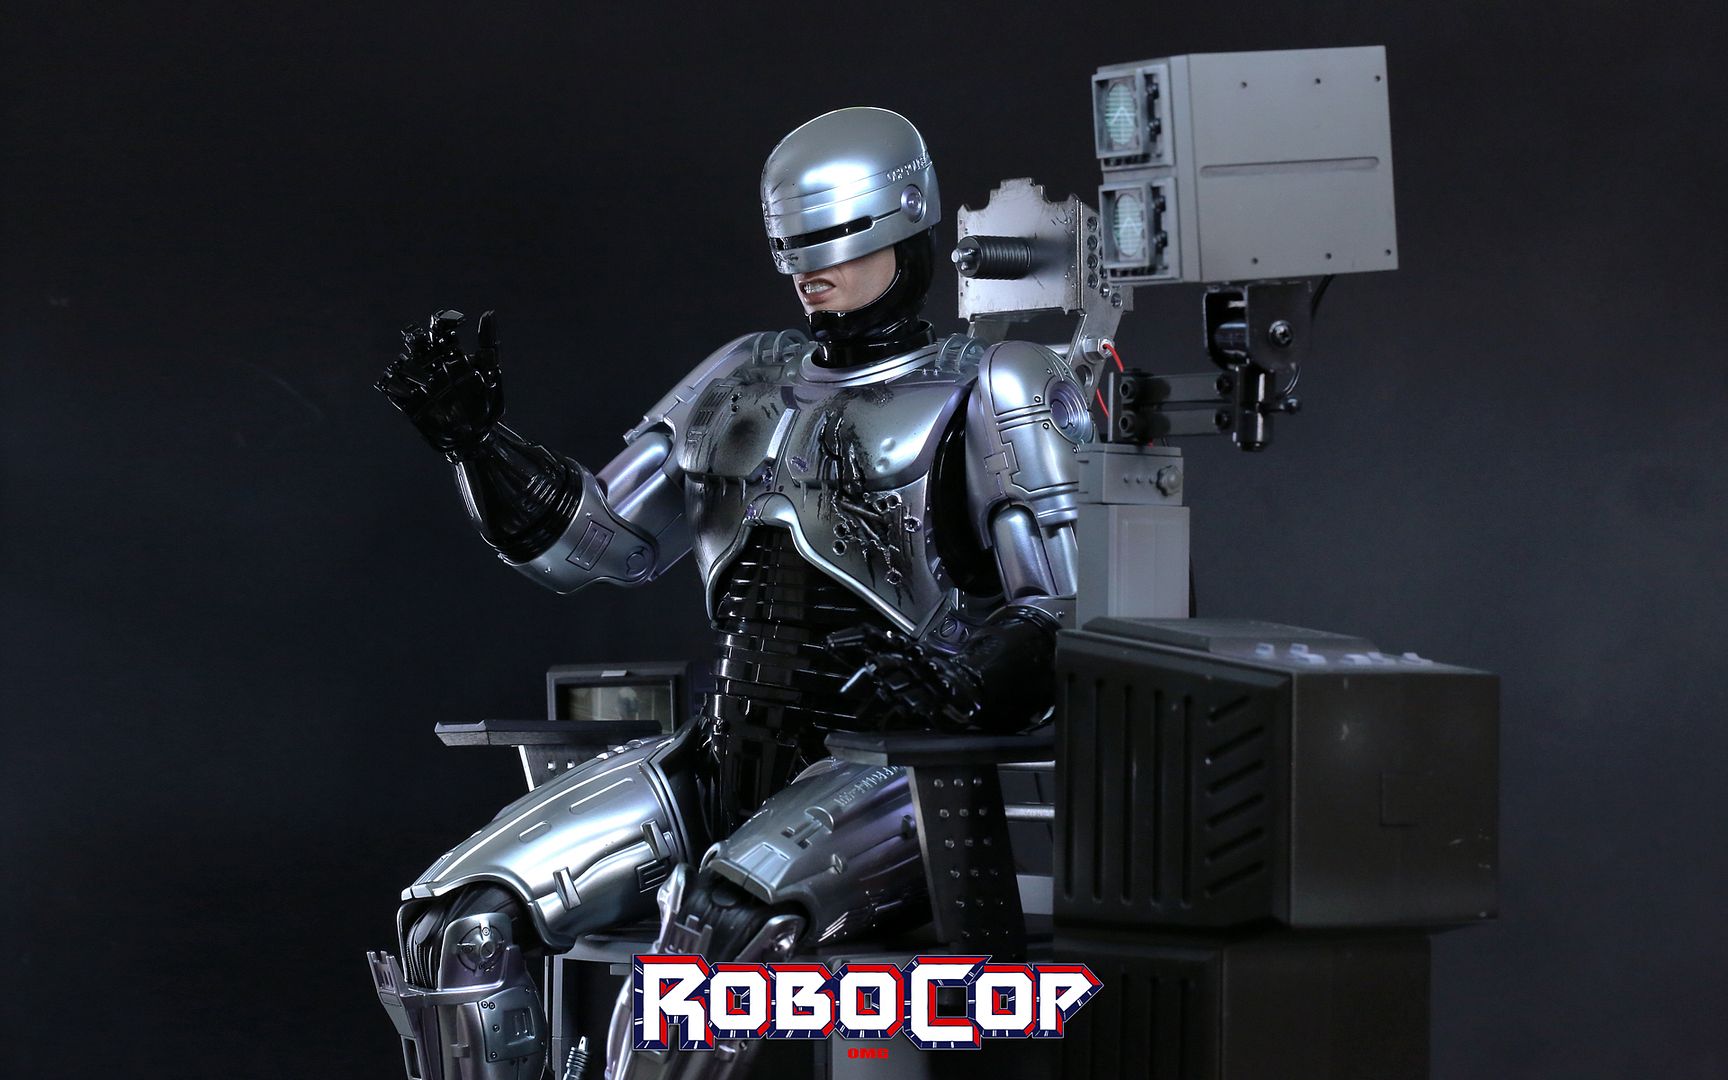 RobocopHD309_zps9553ea7e.jpg